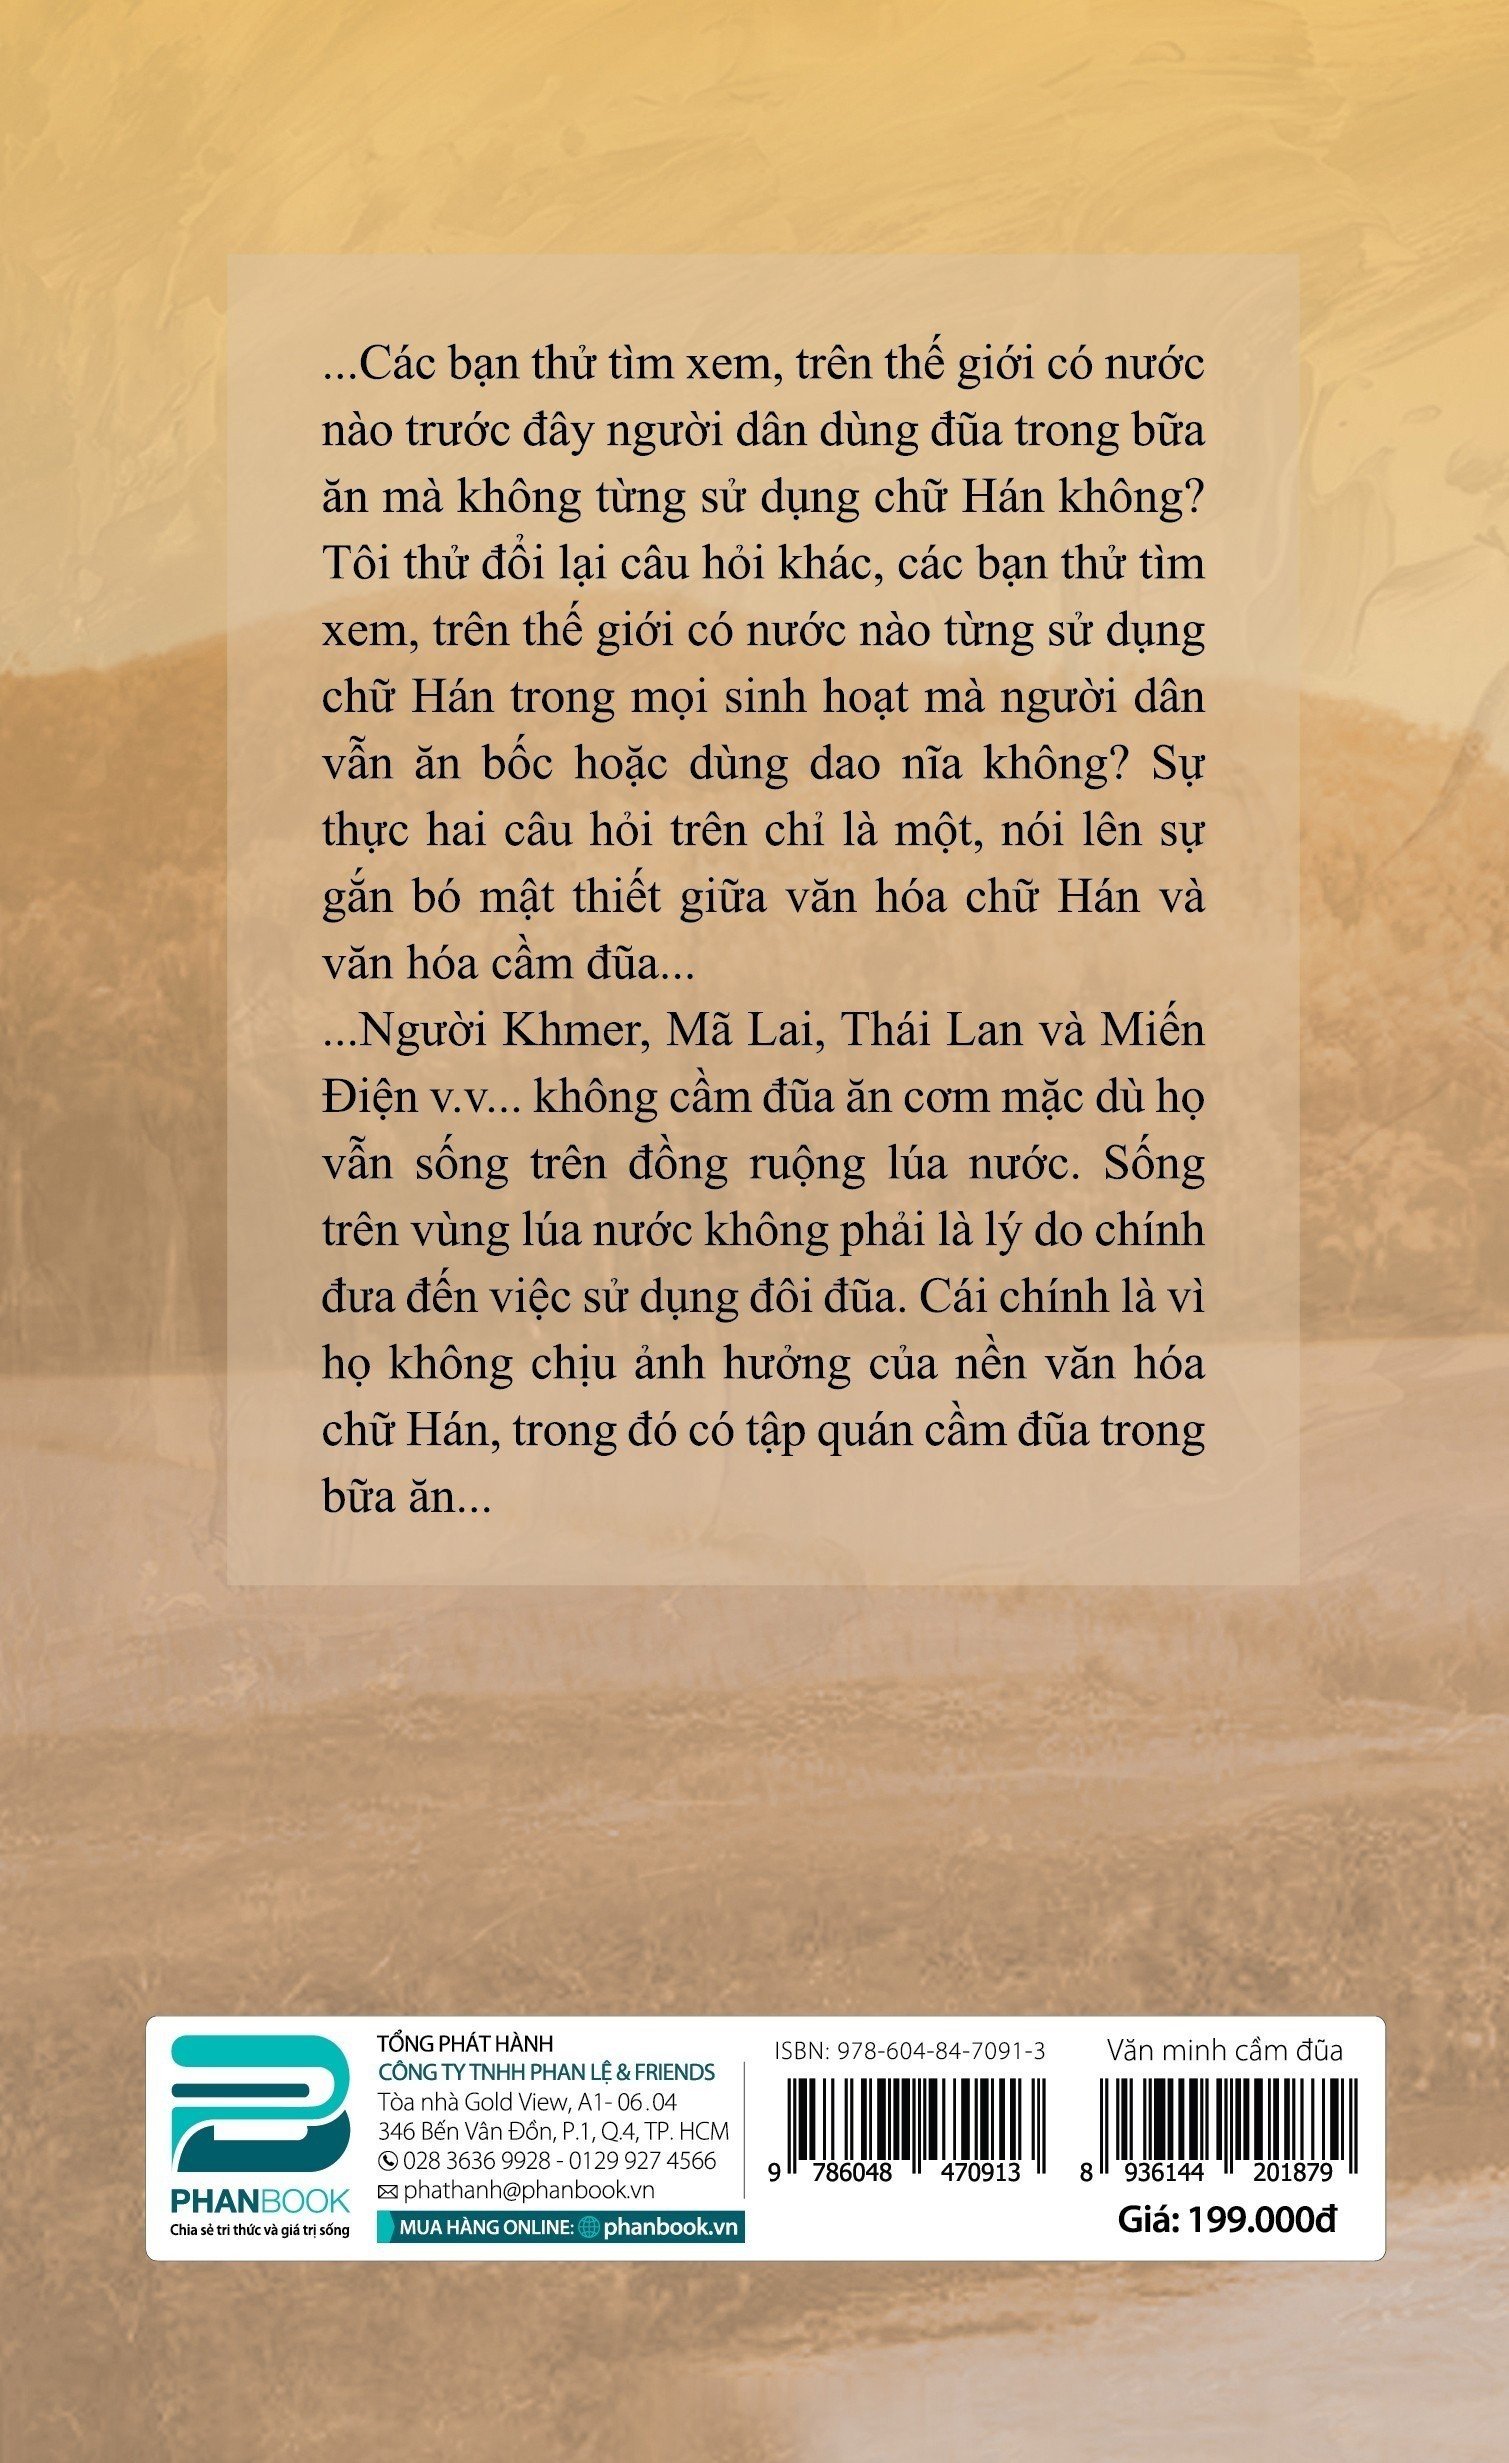 VĂN MINH CẦM ĐŨA - (Những Tương Đồng Trong Văn Hóa Xã Hội Các Nước) - Thái Gia Kỳ - Sách Khảo Luận - (bìa mềm)